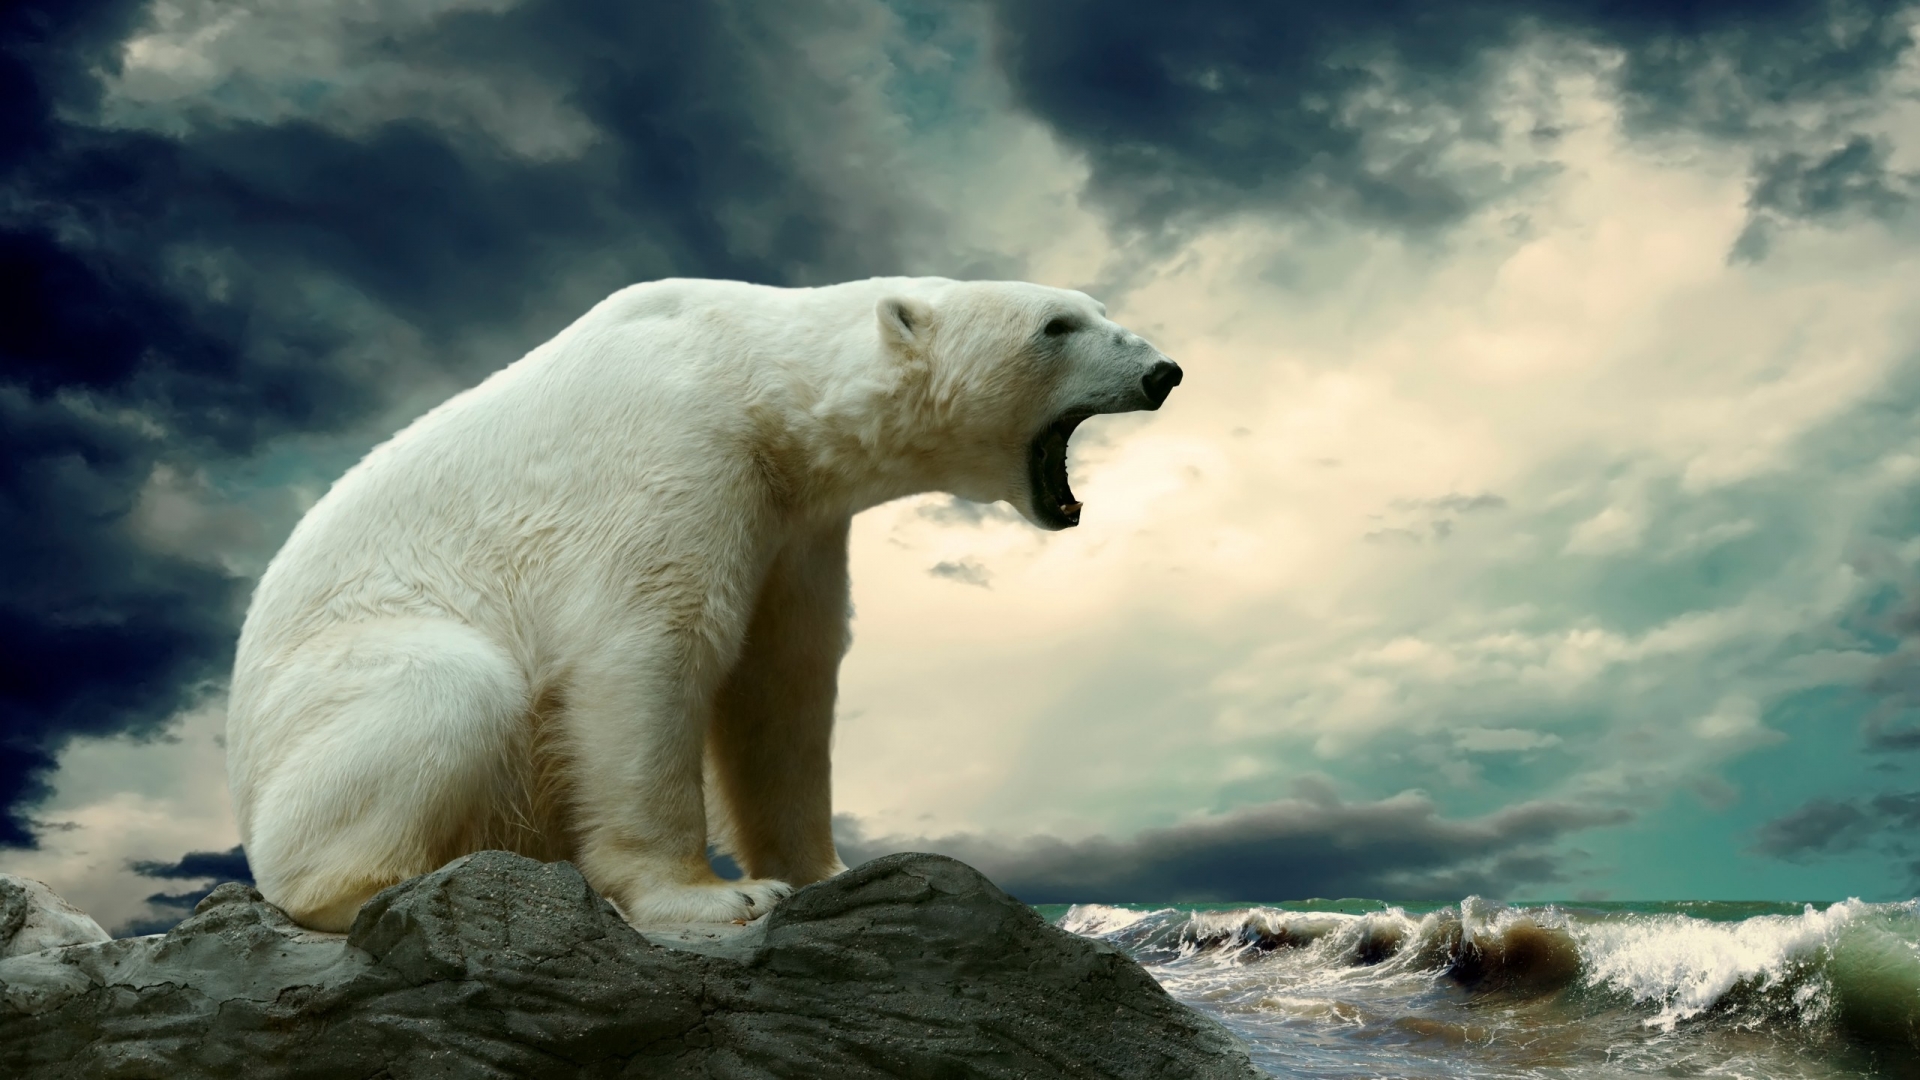 Polar Bear Shouting for 1920 x 1080 HDTV 1080p resolution